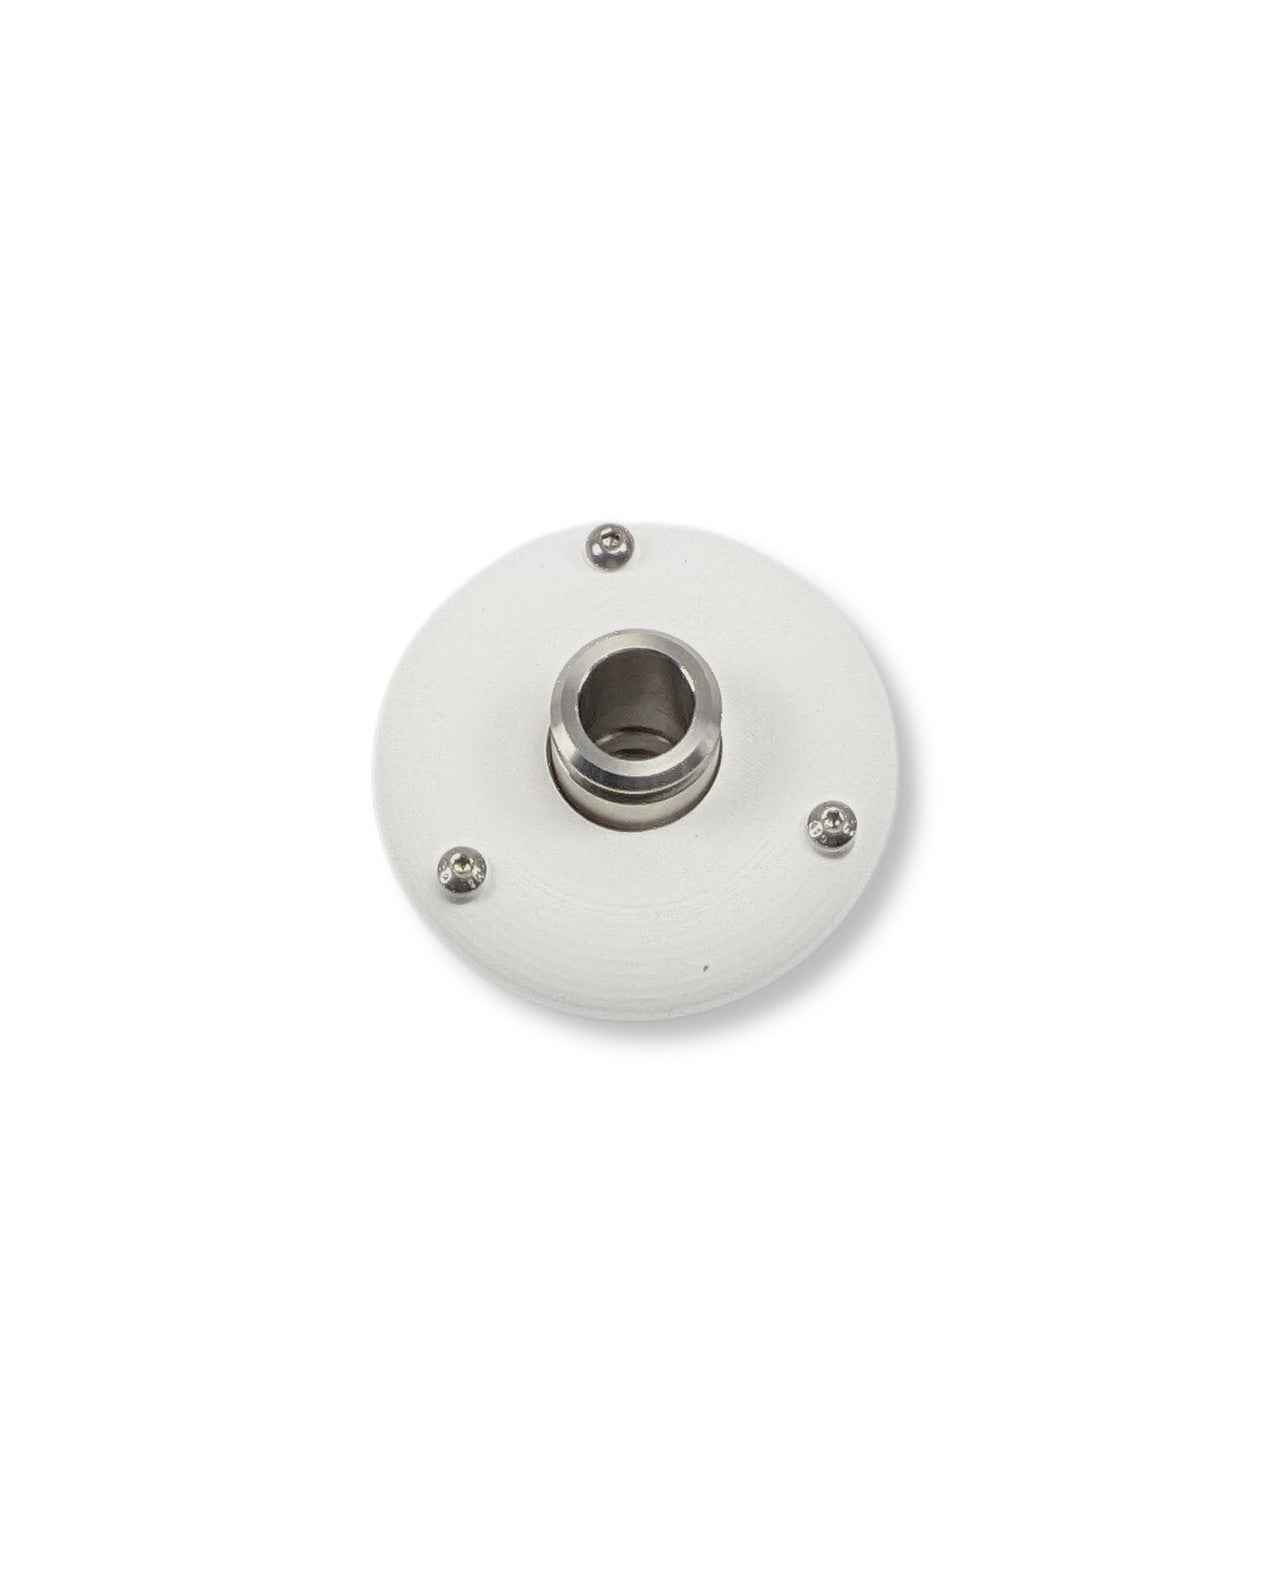 Ein weißer runder Knopf auf einer weißen Oberfläche zur Wasserentnahme mit dem PURION IBC Universal 36W SPL BS von UV Concept GmbH.